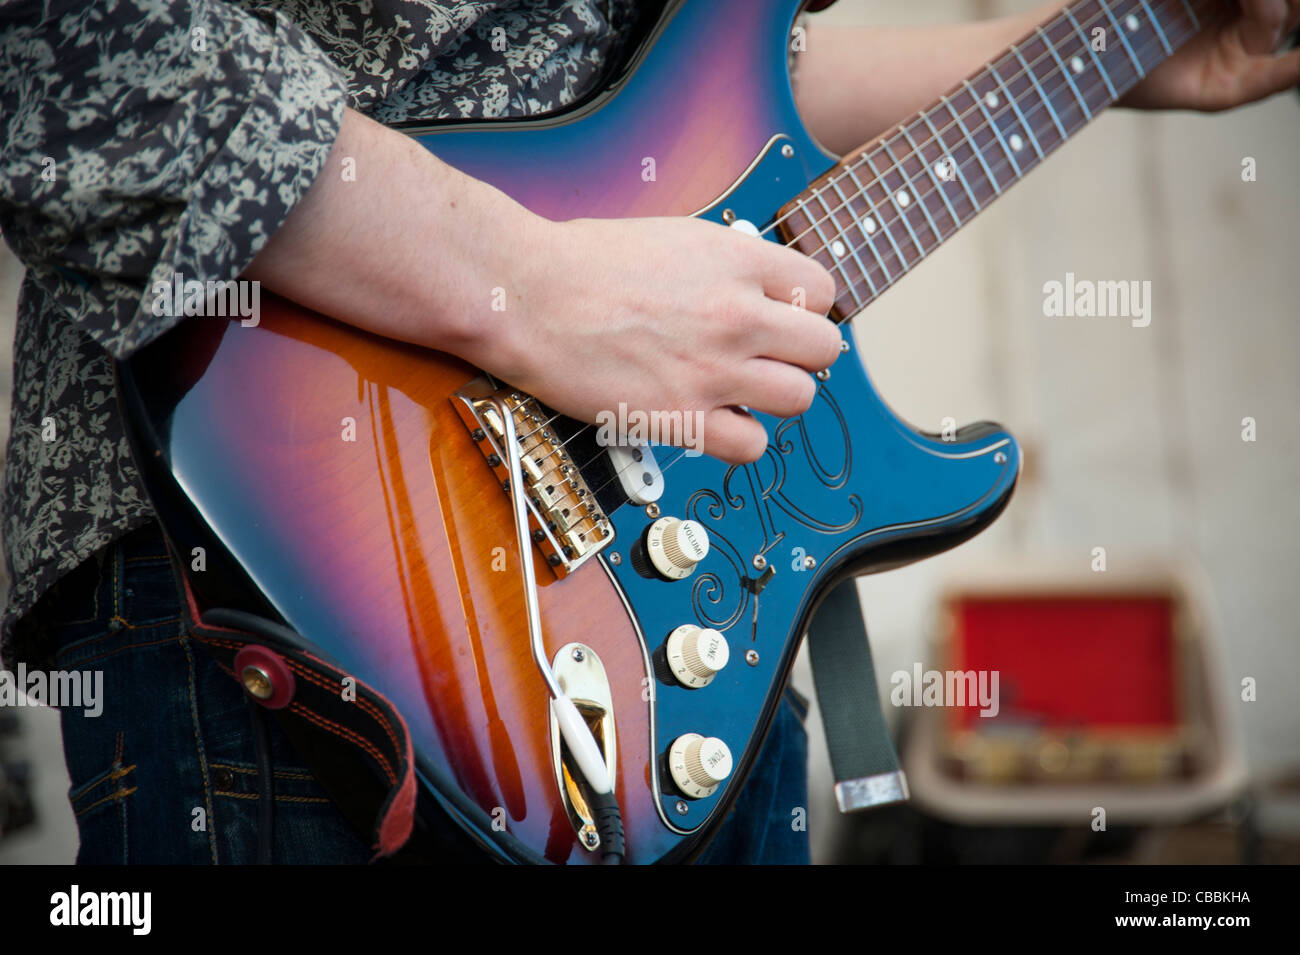 Homme jouant de la guitare Fender Stratocaster SRV, fermer en montrant les mains et corps de guitare. Banque D'Images